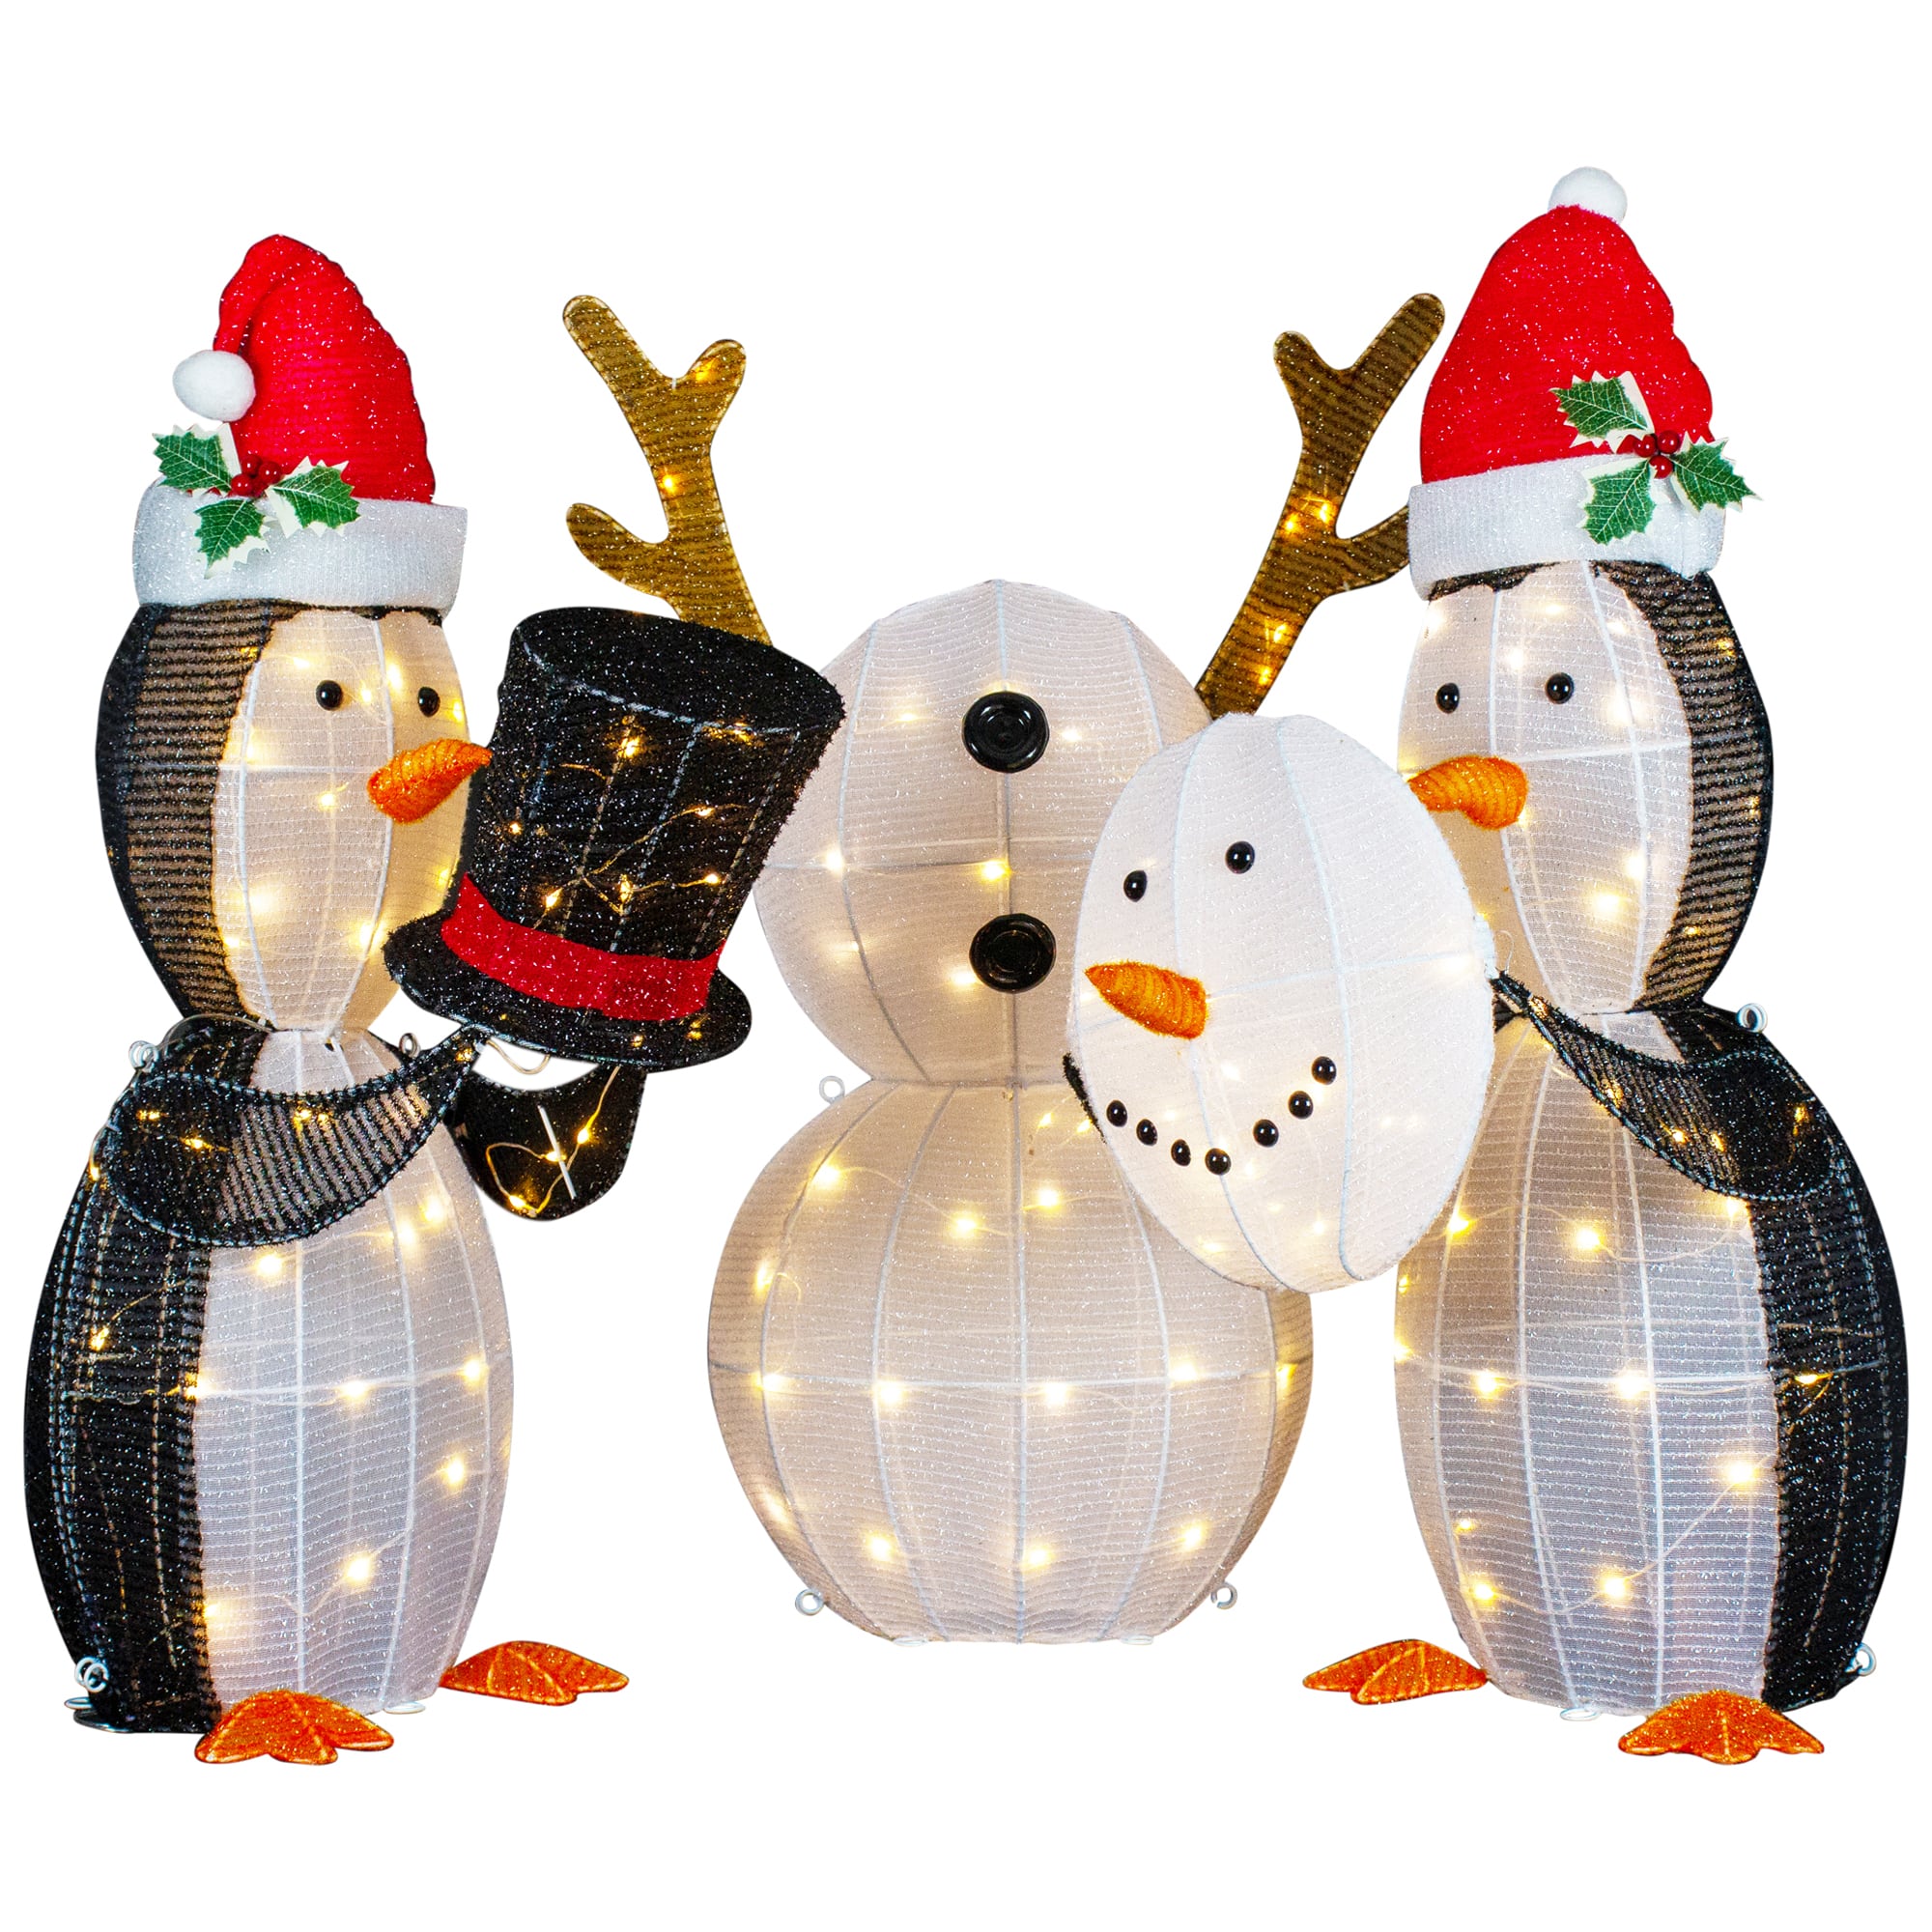 LED Penguins Building Snowman Outdoor Christmas Décor Set